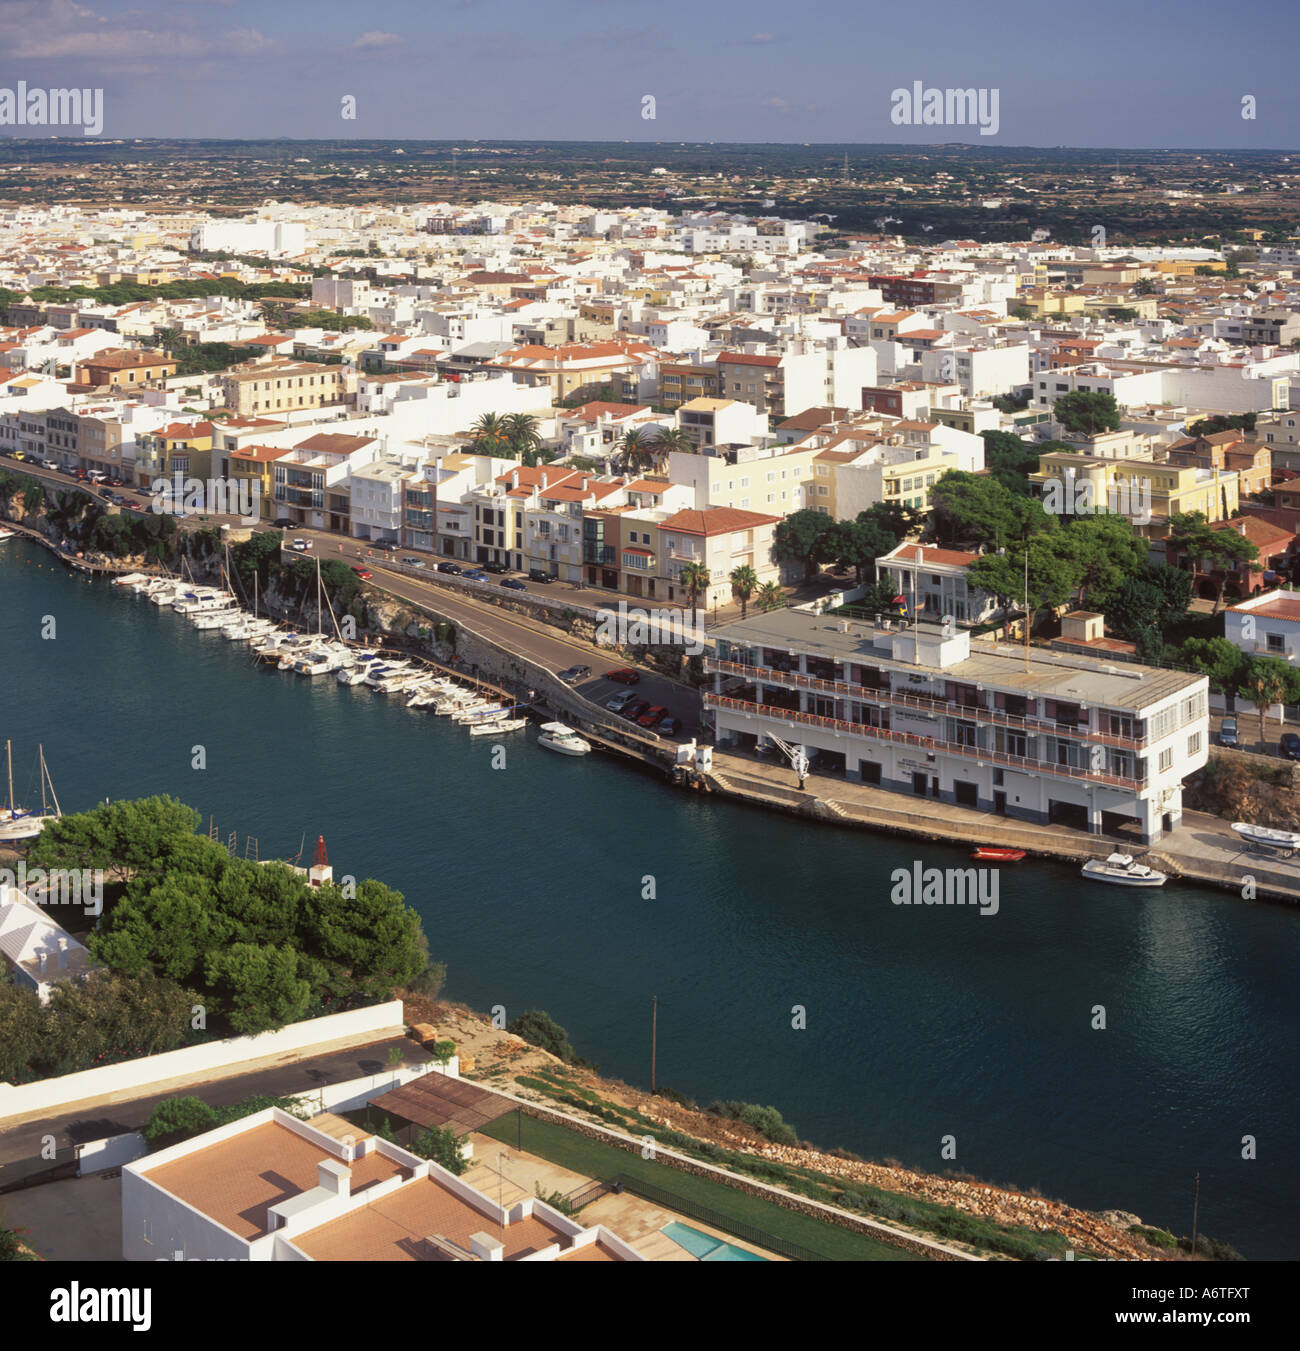 Vista aérea - Mirando hacia el este a través de la cabecera del puerto / Puerto de la Ciutadella, Menorca. Foto de stock